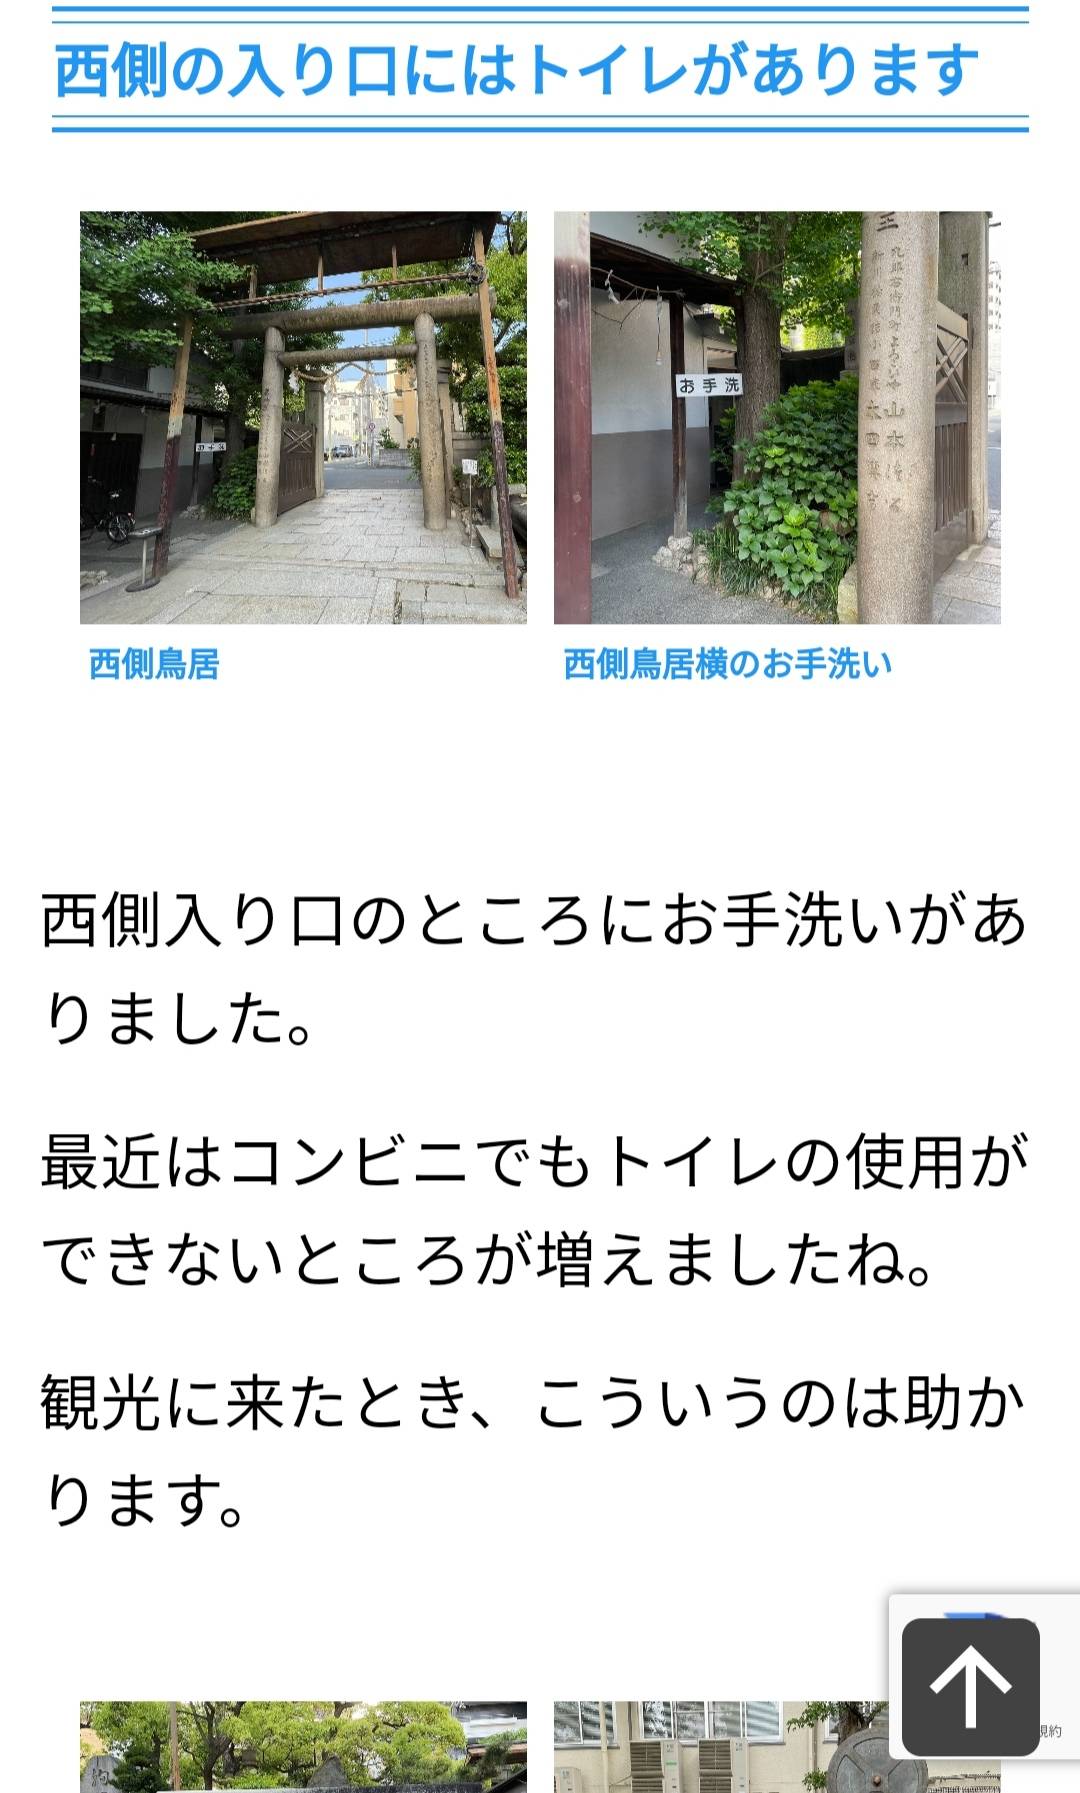 [問題] 請問難波八阪神社附近有廁所嗎？